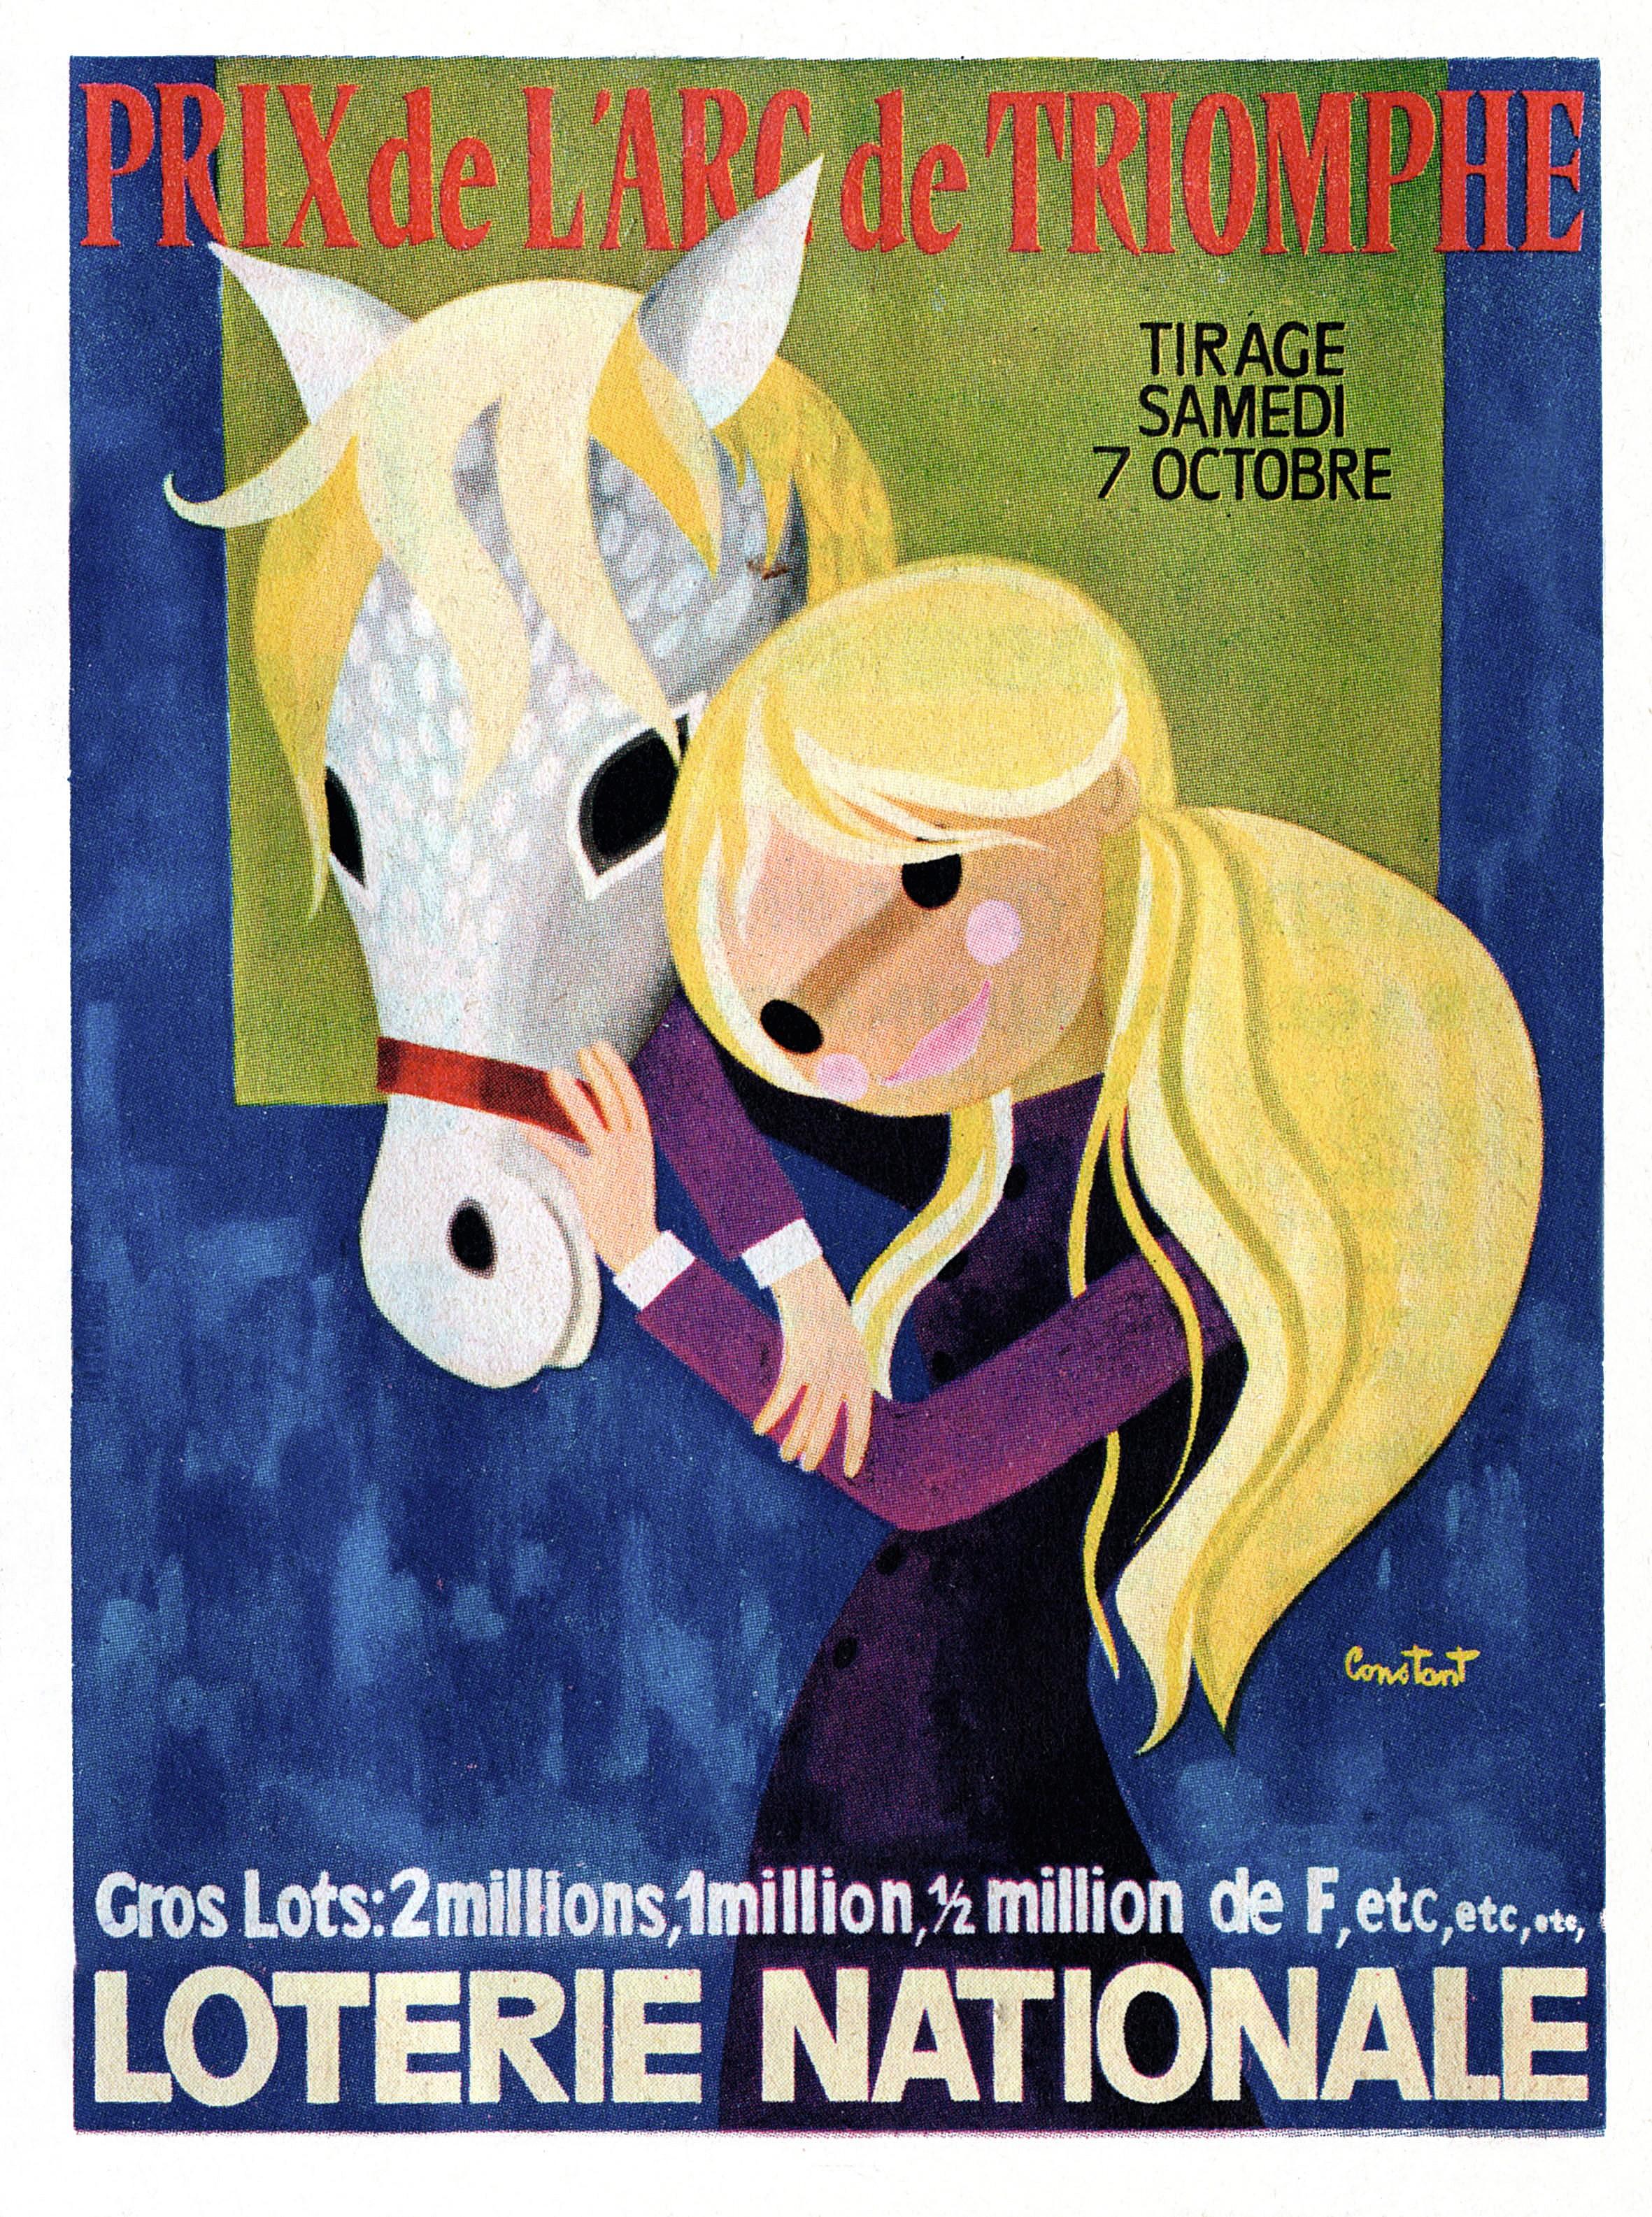 Publicité pour la Loterie nationale, dans les années soixante